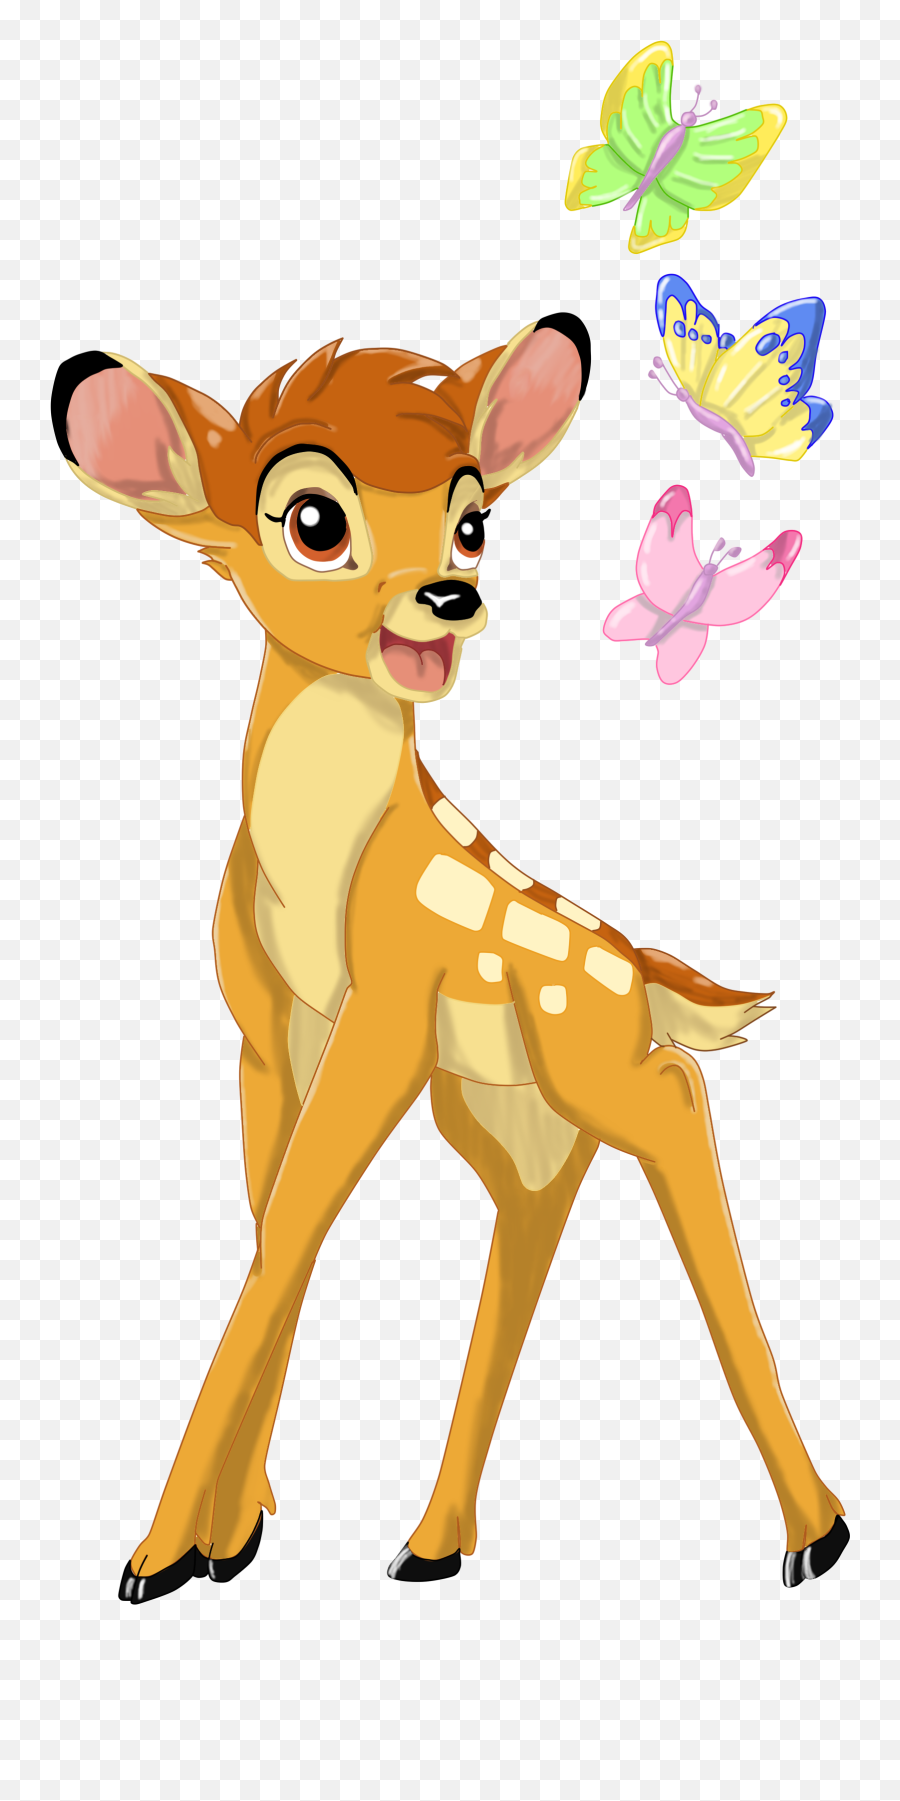 Transparent Png Image - Disney Bambi Png,Bambi Png